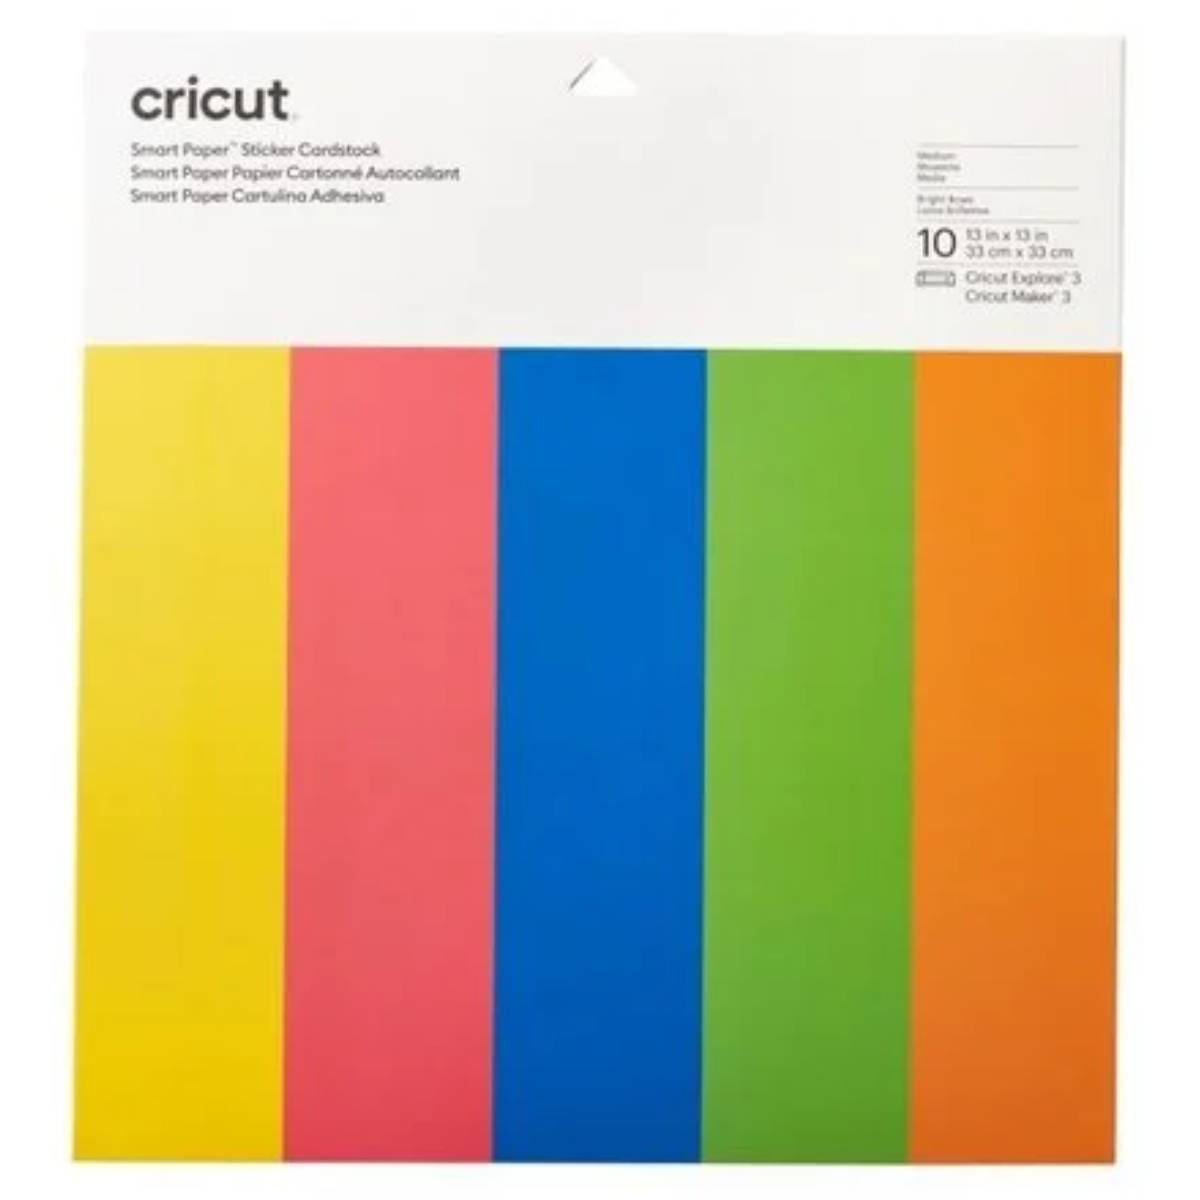 מדבקה קארדסטוק קשת 33*33 ס"מ Cricut Smart Paper Sticker Cardstock